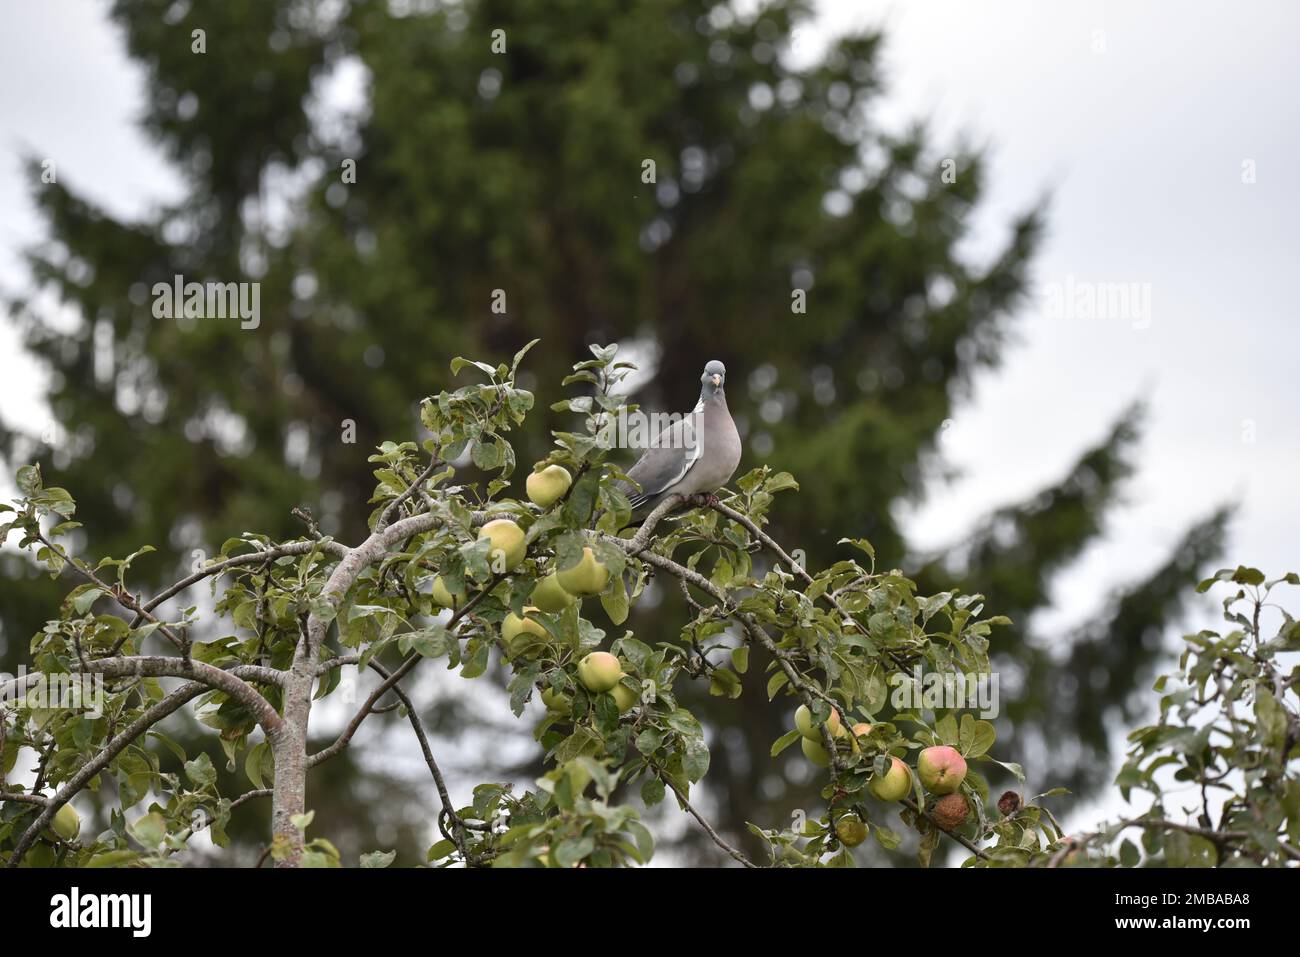 Common Woodpigeon (Columba Palumbus) hoch oben in einem Apfelbaum, Blick nach unten in Richtung Kamera, vor einem verschwommenen Baumhintergrund, aufgenommen in Großbritannien Stockfoto